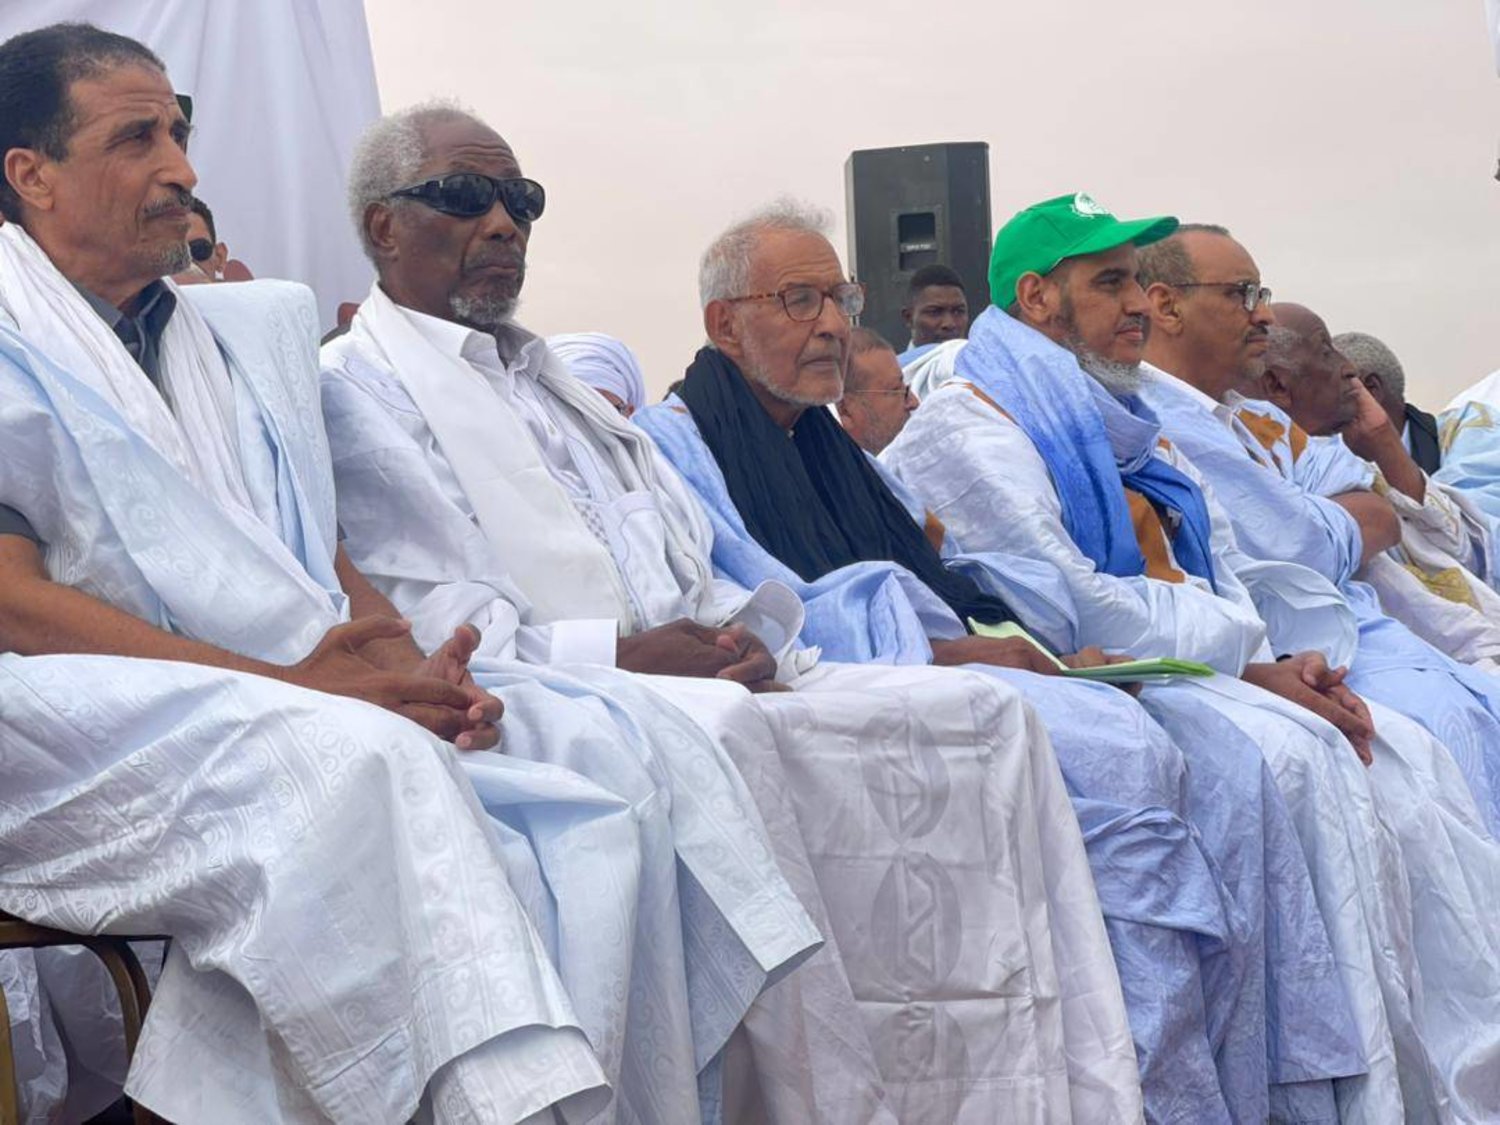 قادة المعارضة الموريتانية في تجمع سابق (الشرق الأوسط)